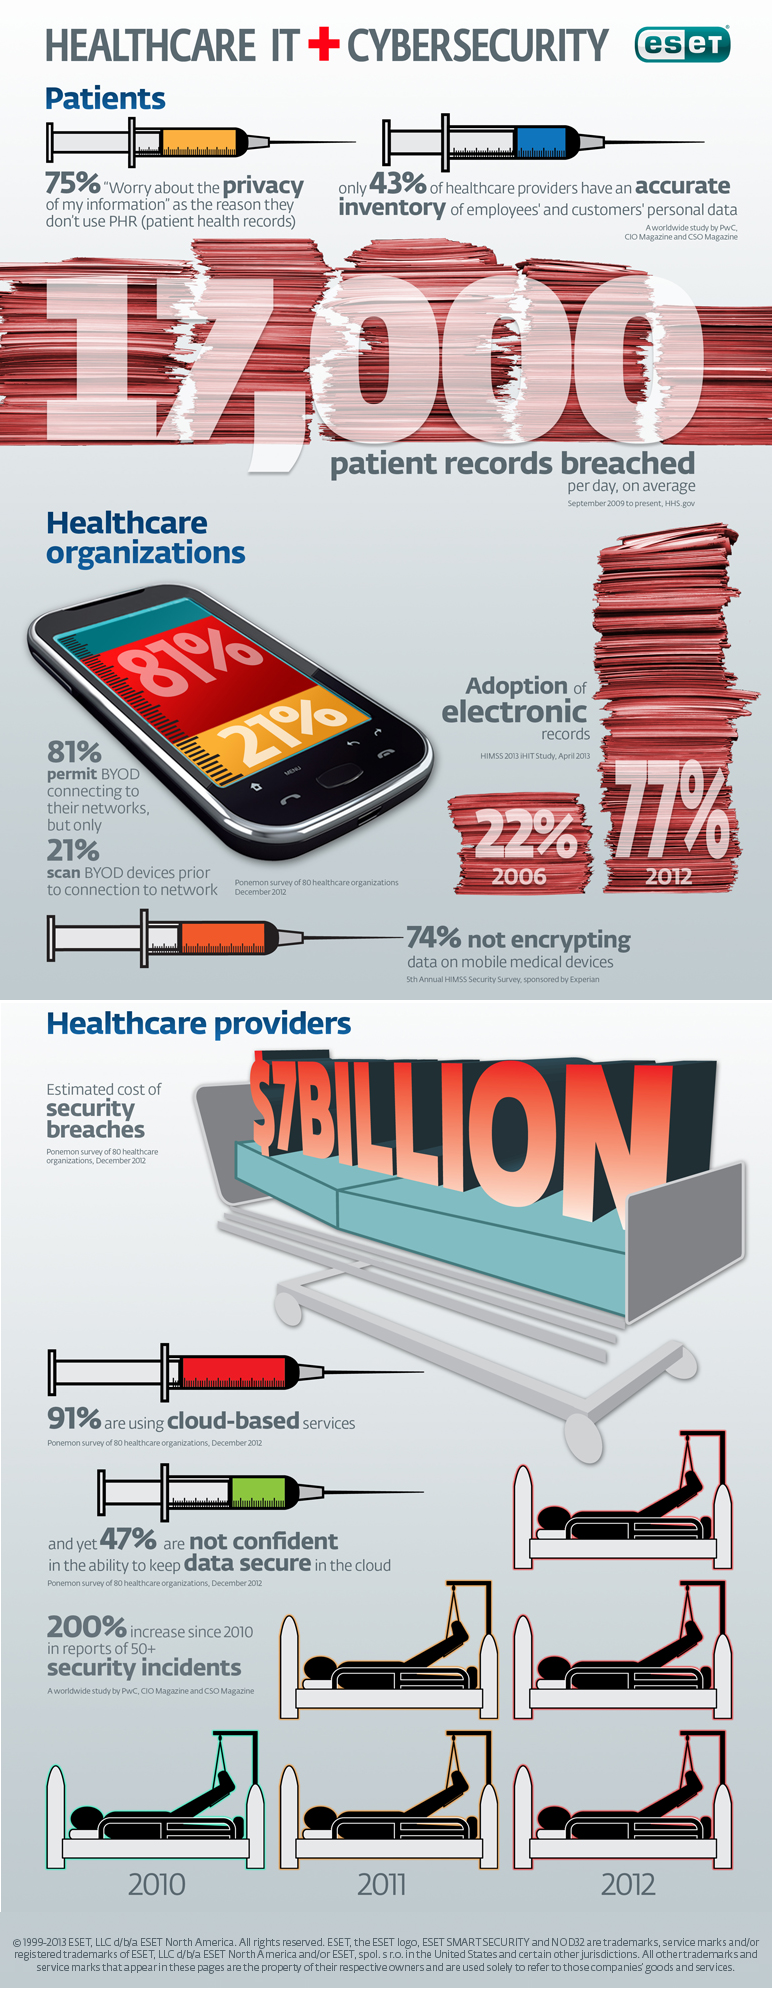 ESET-healthcare-infographic